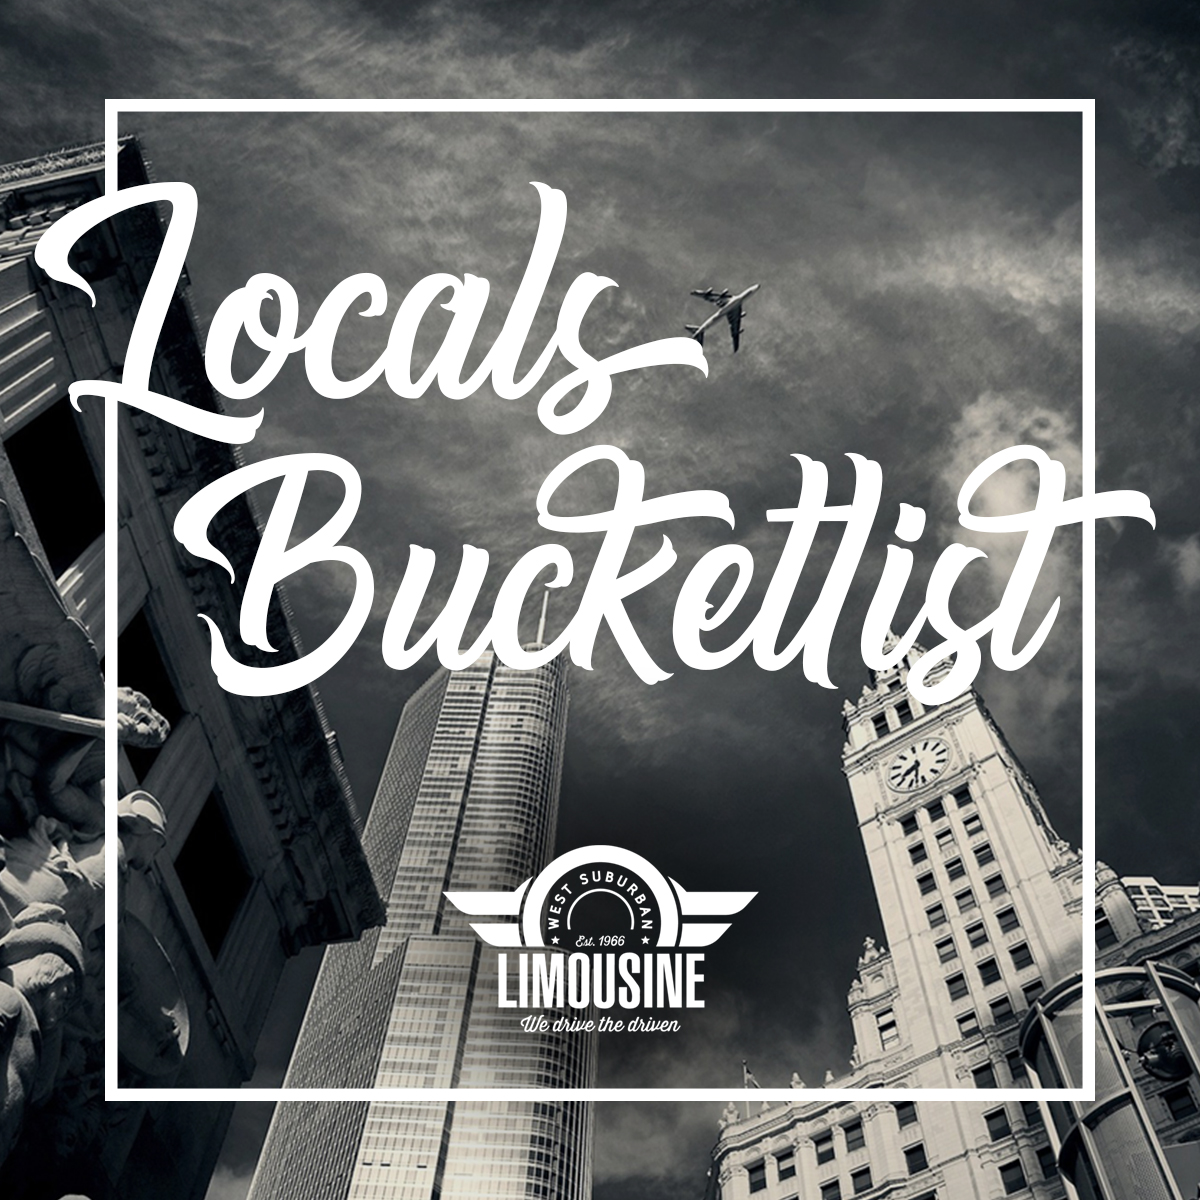 Chicago 2020 Bucket List for Locals